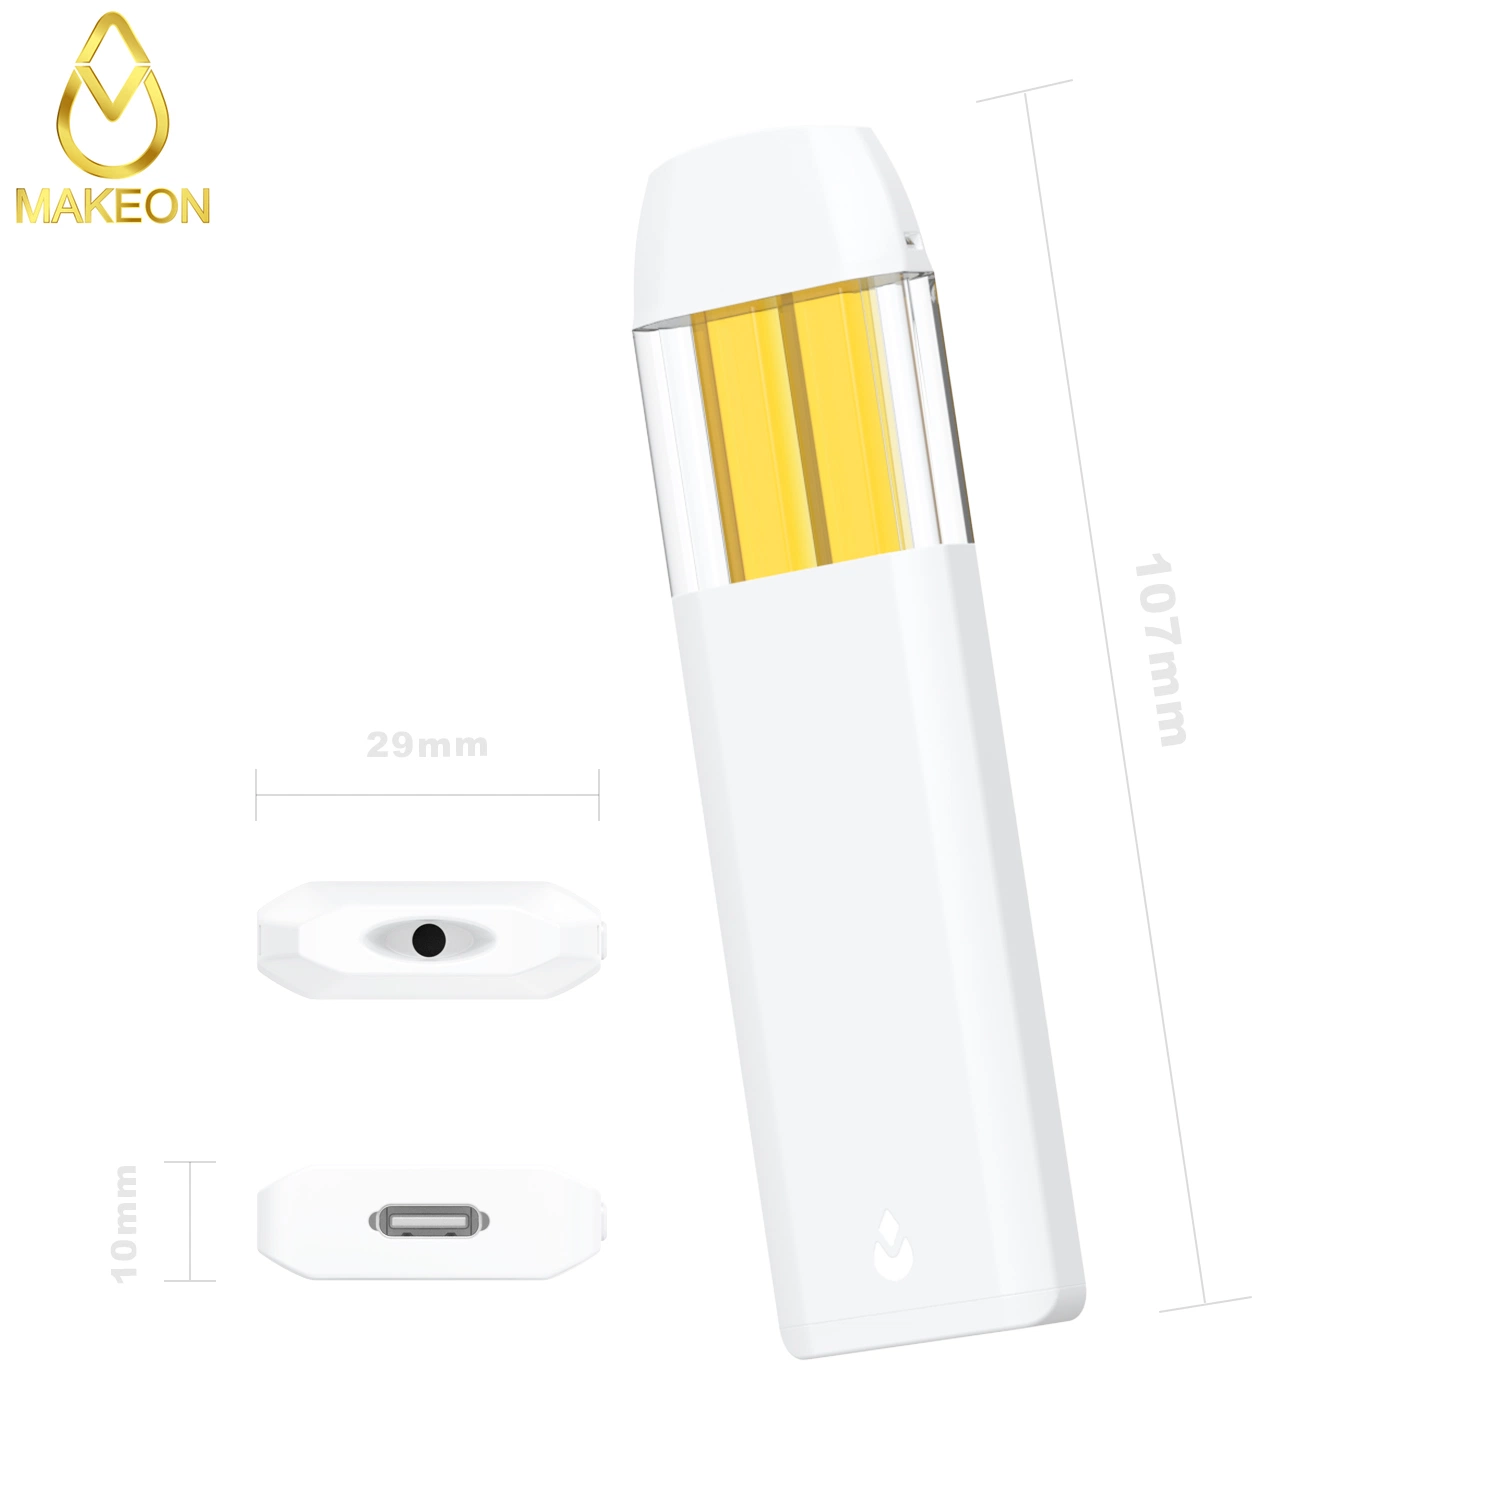 VAPE desechable al por mayor interruptor de pluma dos sabores E-Liquid diferentes Mini-E-Cigarette OEM Personalizado